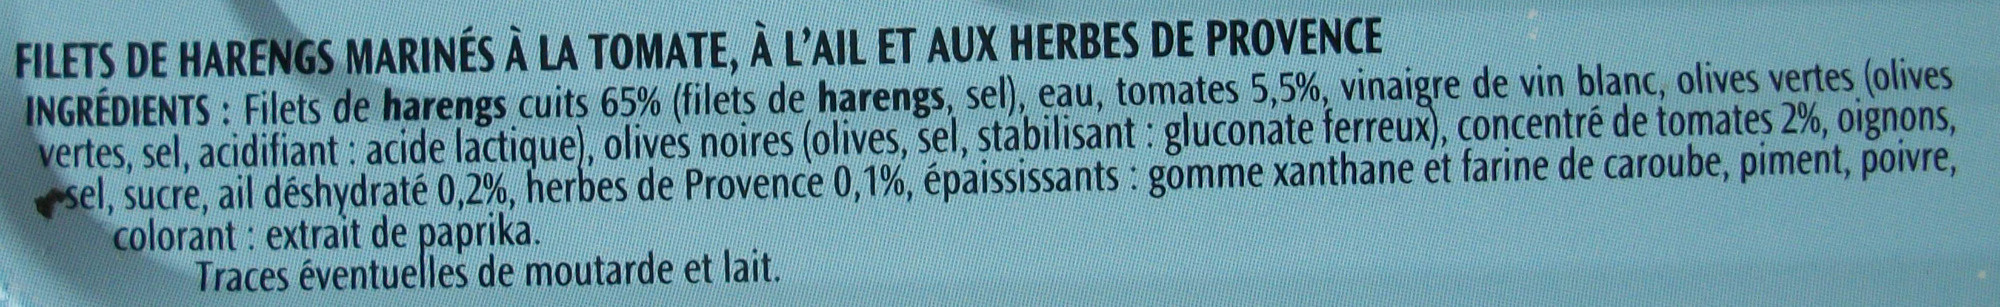 Filets de harengs (Tomate, Ail et Herbes de Provence, Sans Huile) - Ingredientes - fr